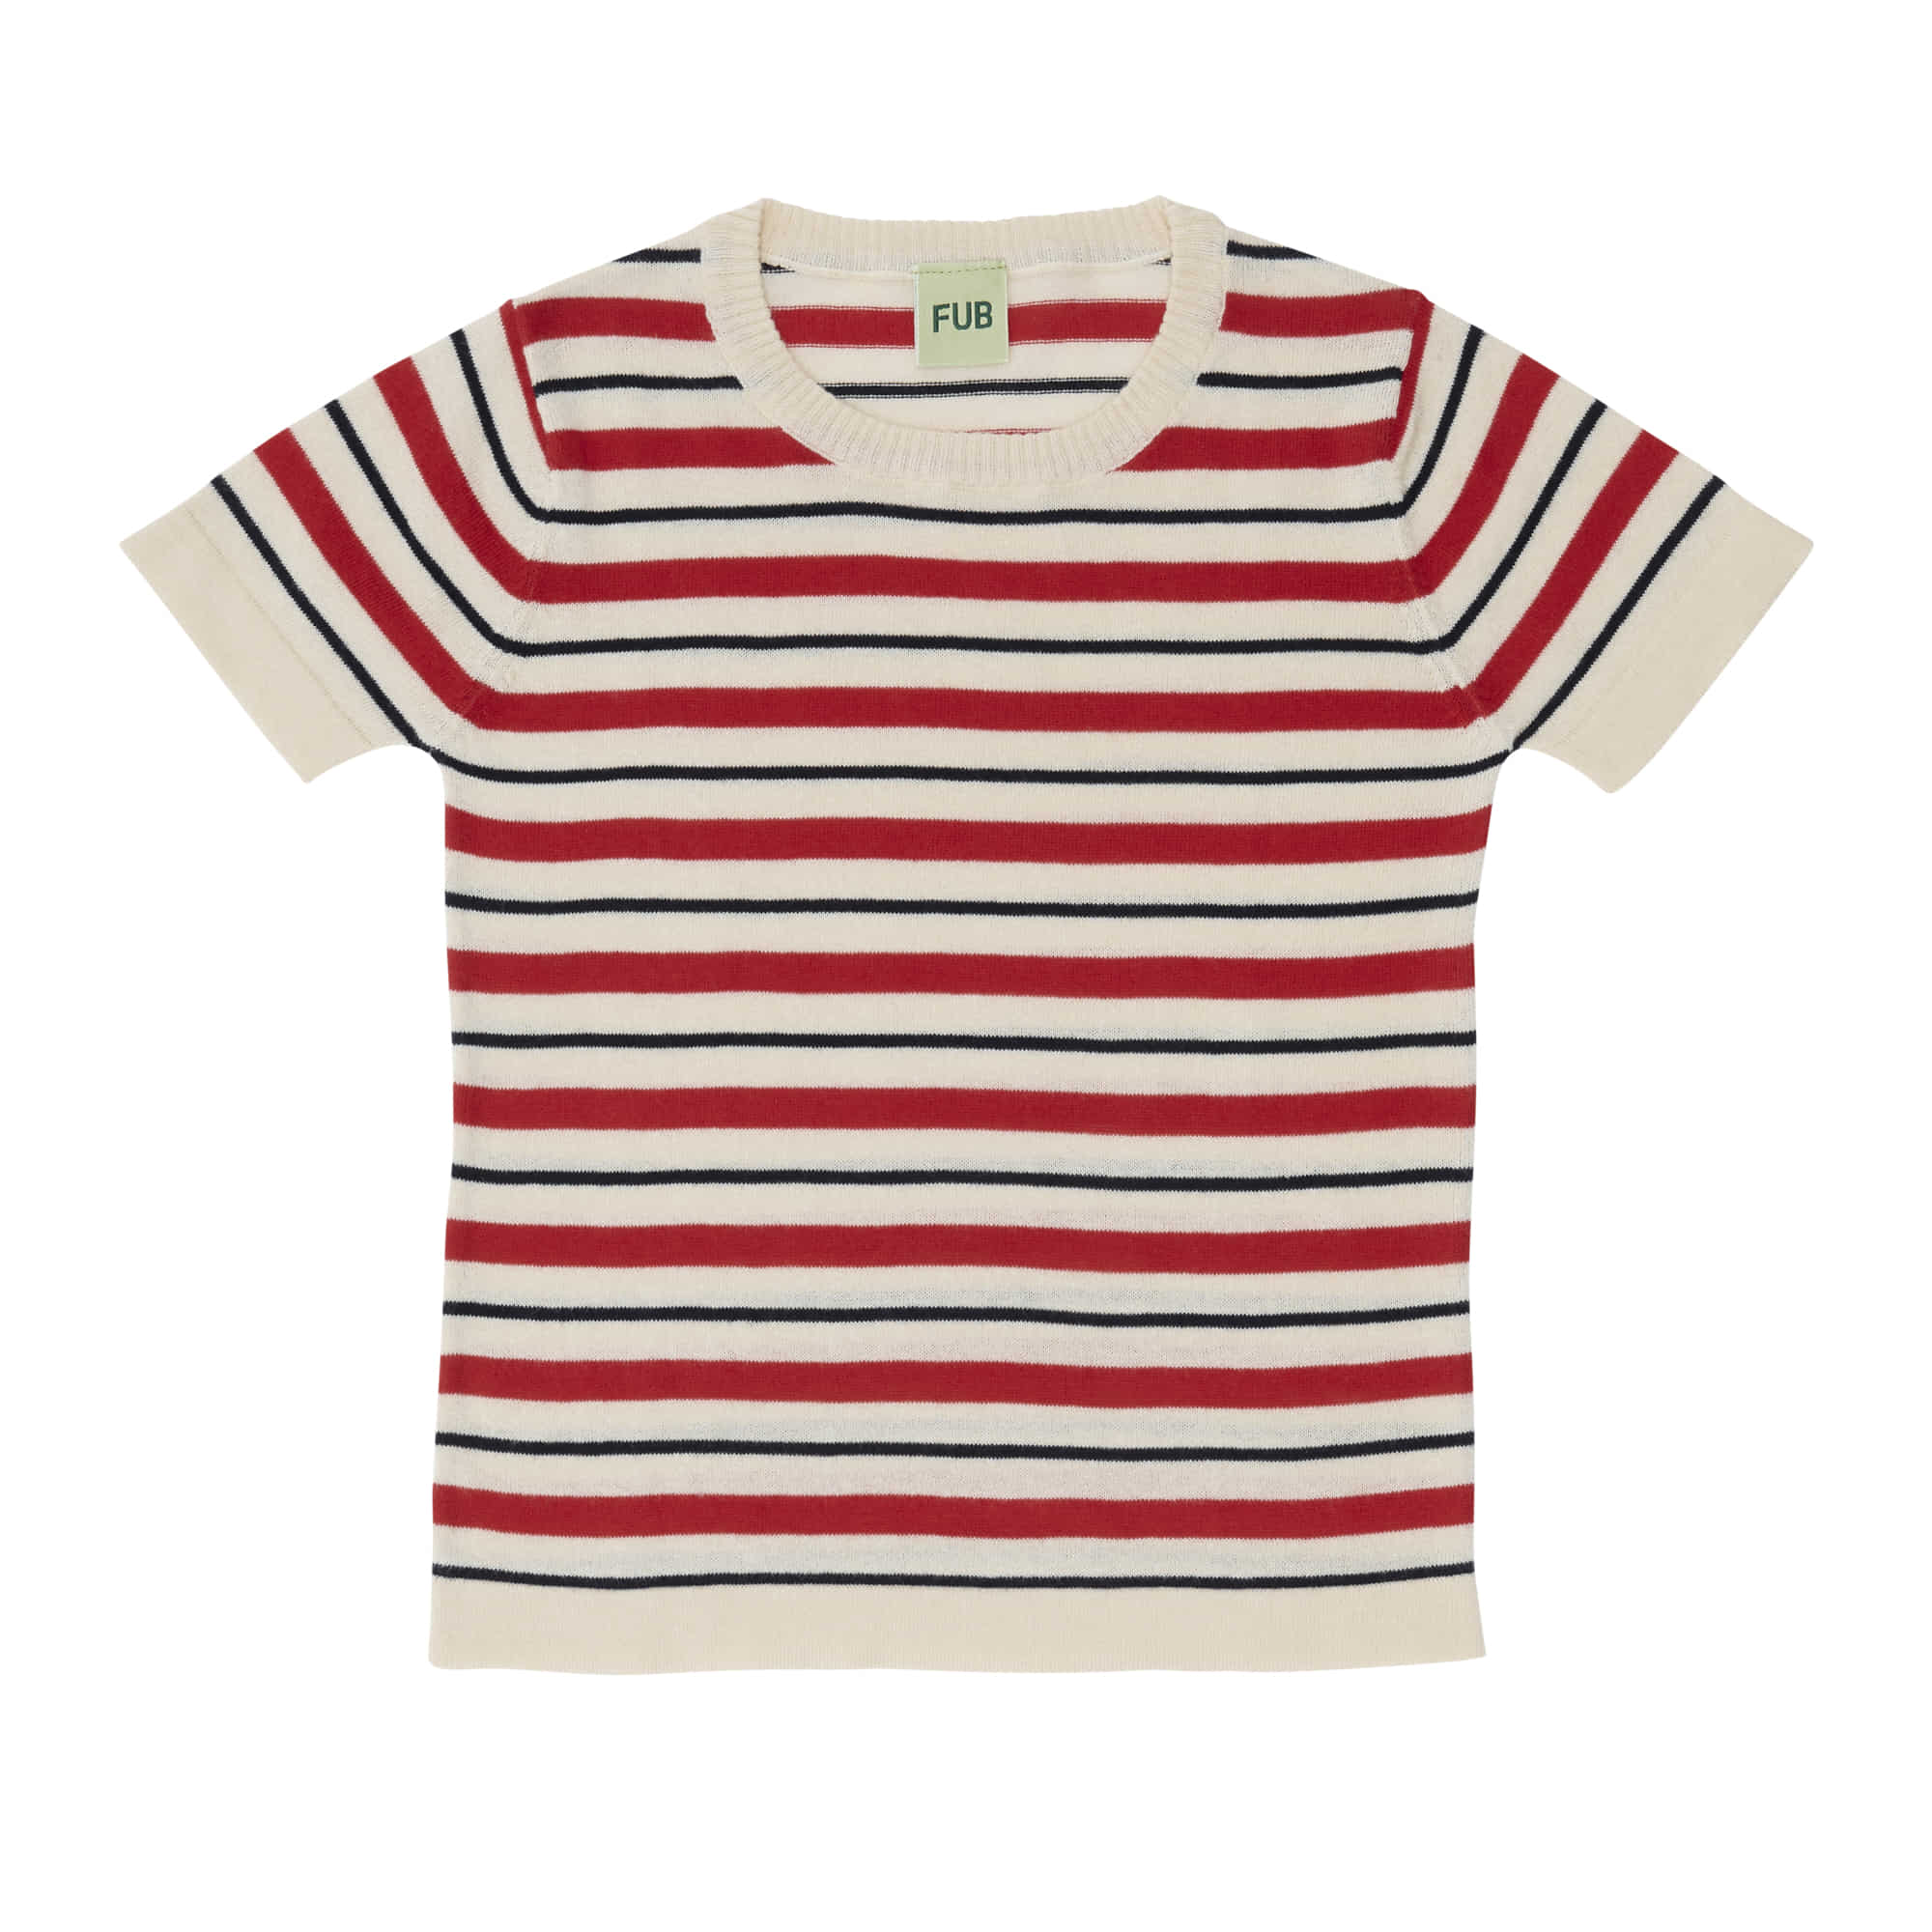 [FUB] Striped T-shirt ecru/bright red